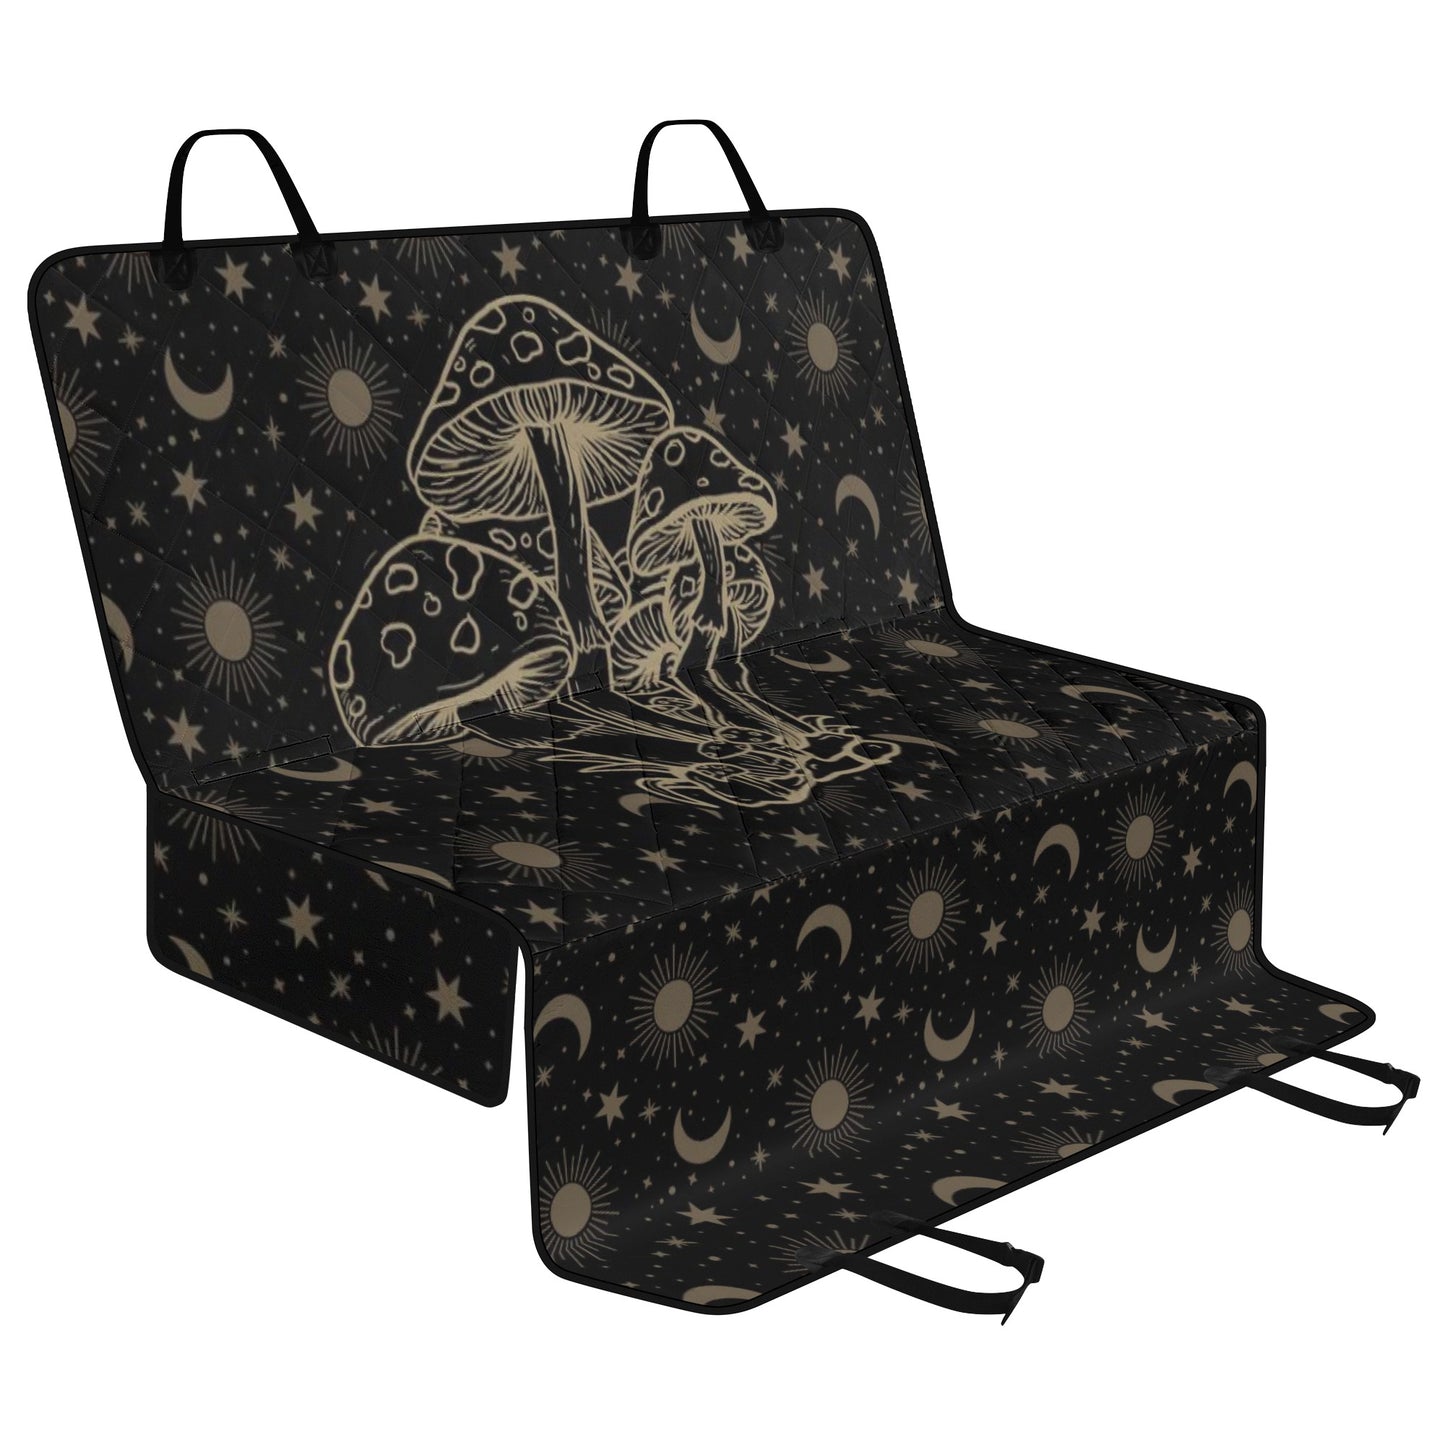 Celestial Mushroom Car Pet Seat Covers